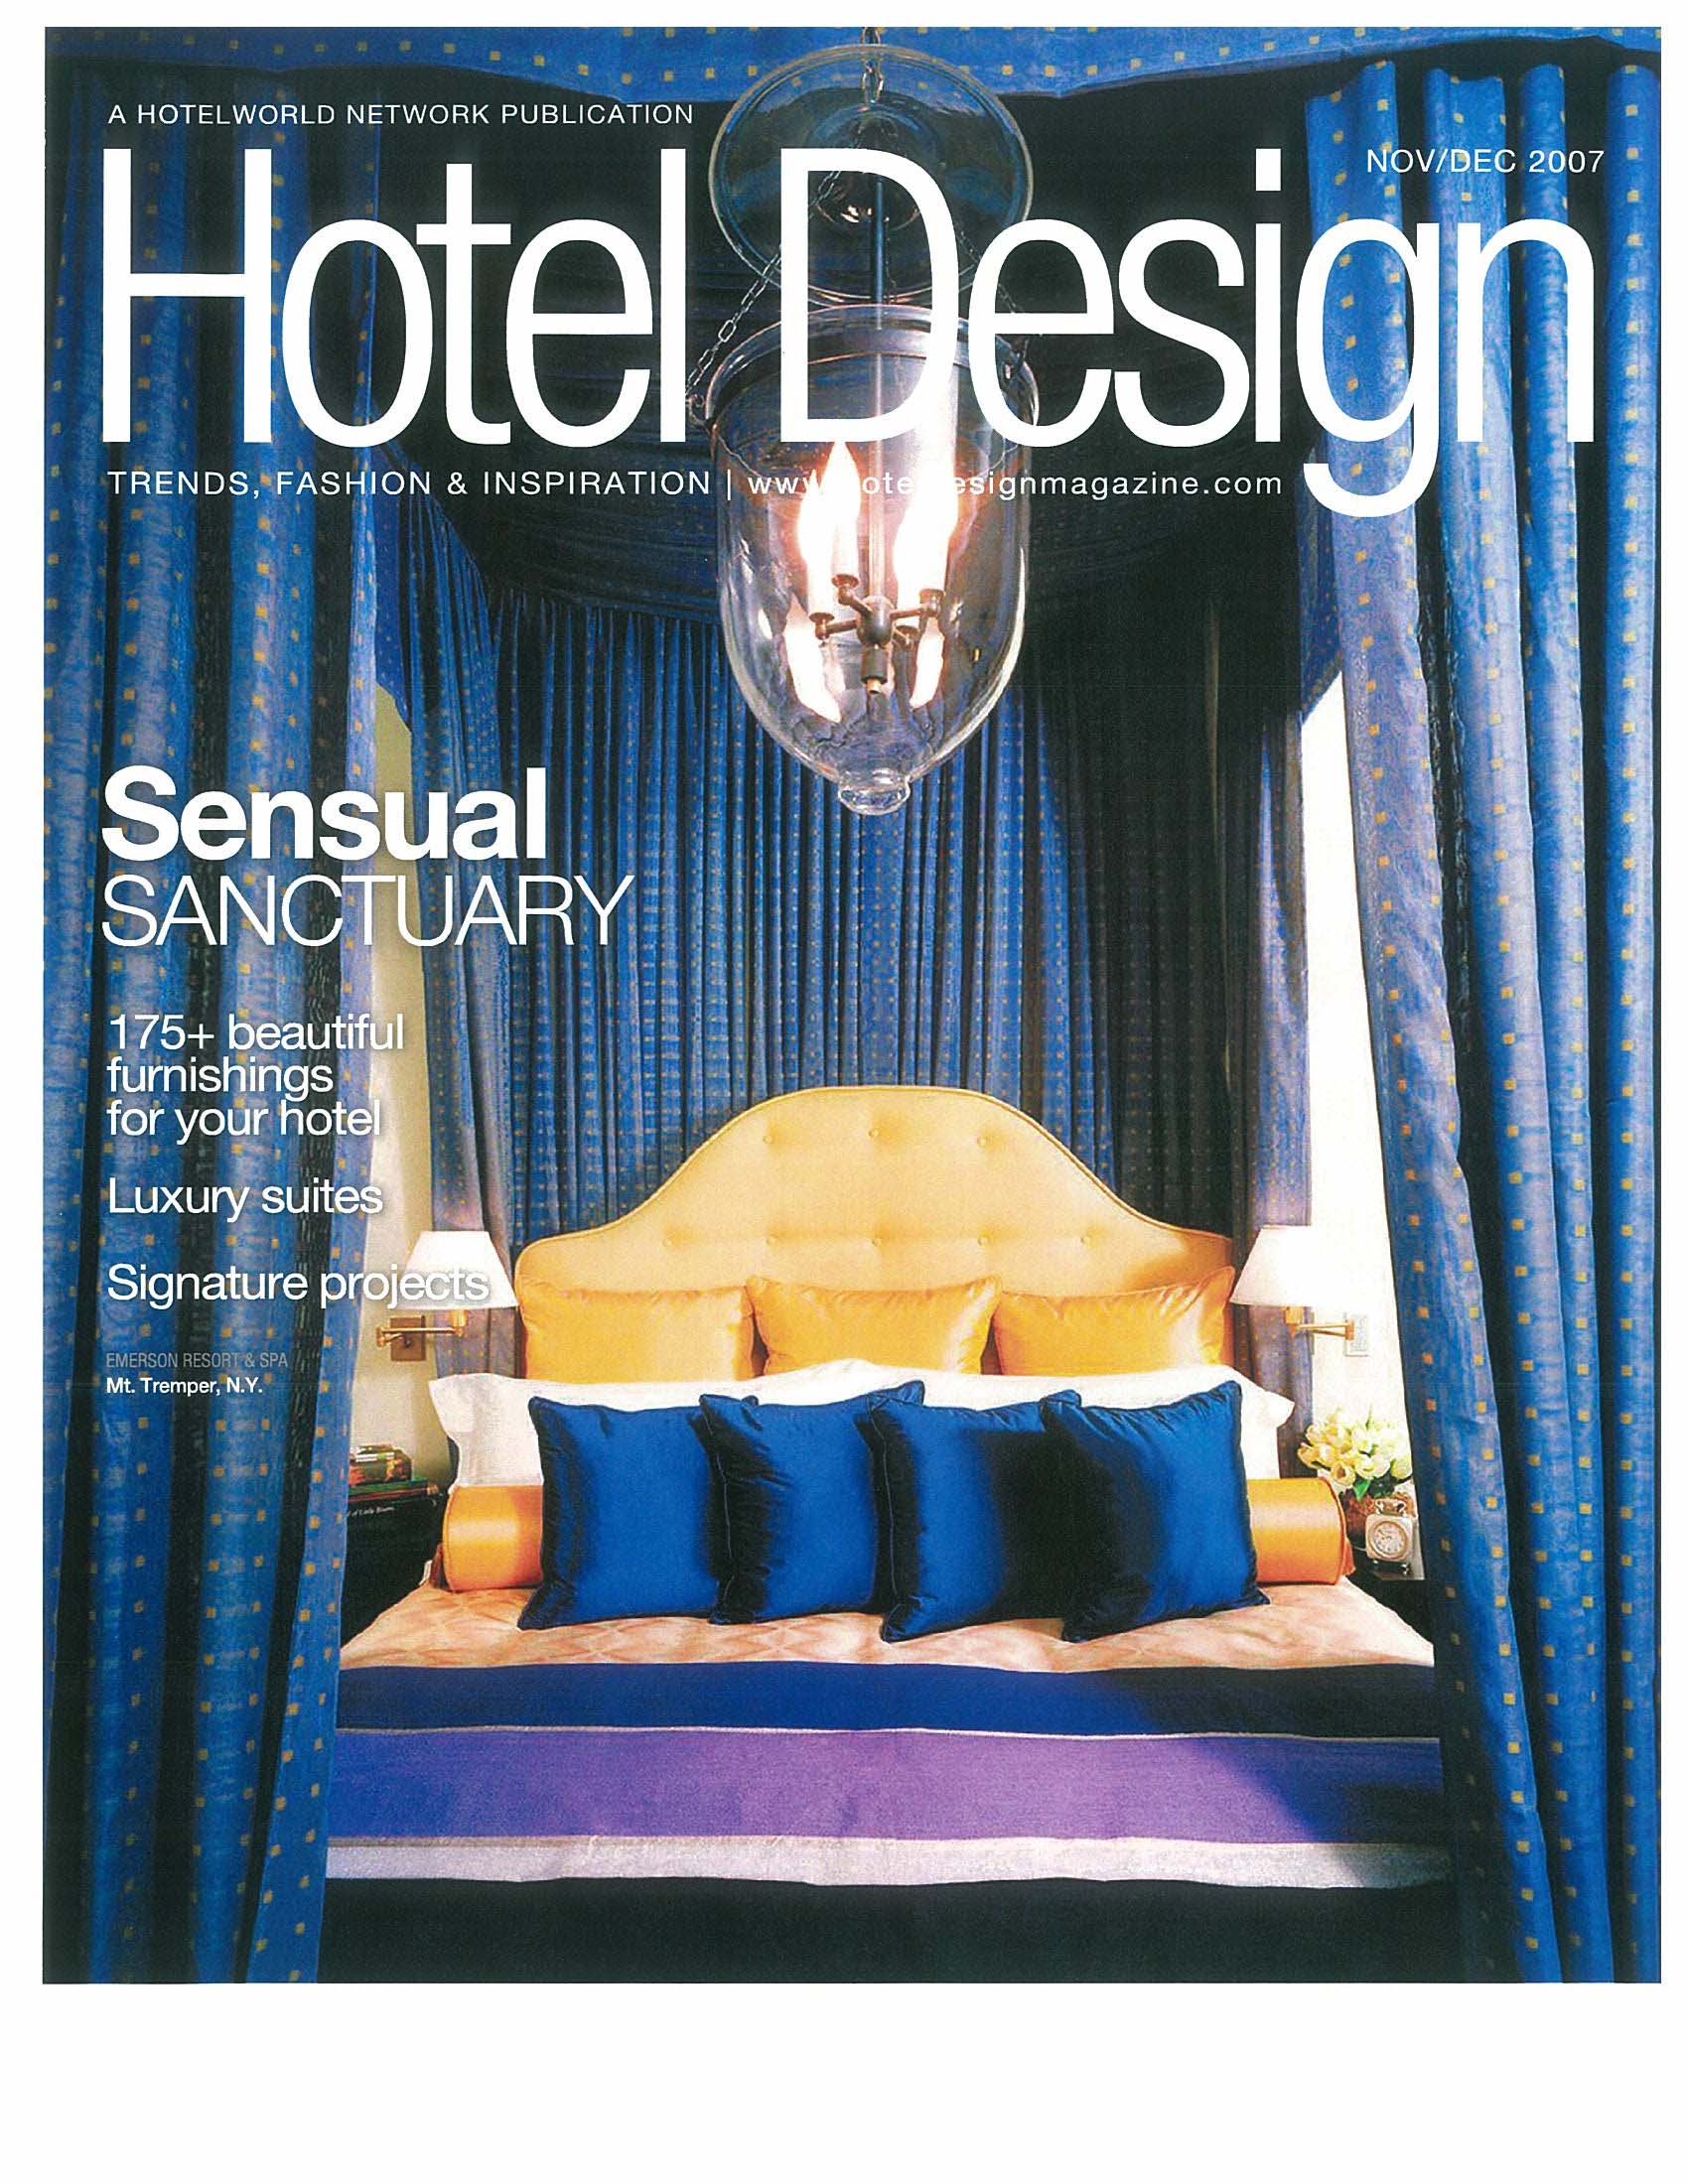 Emerson_Hotel_Design_Cover